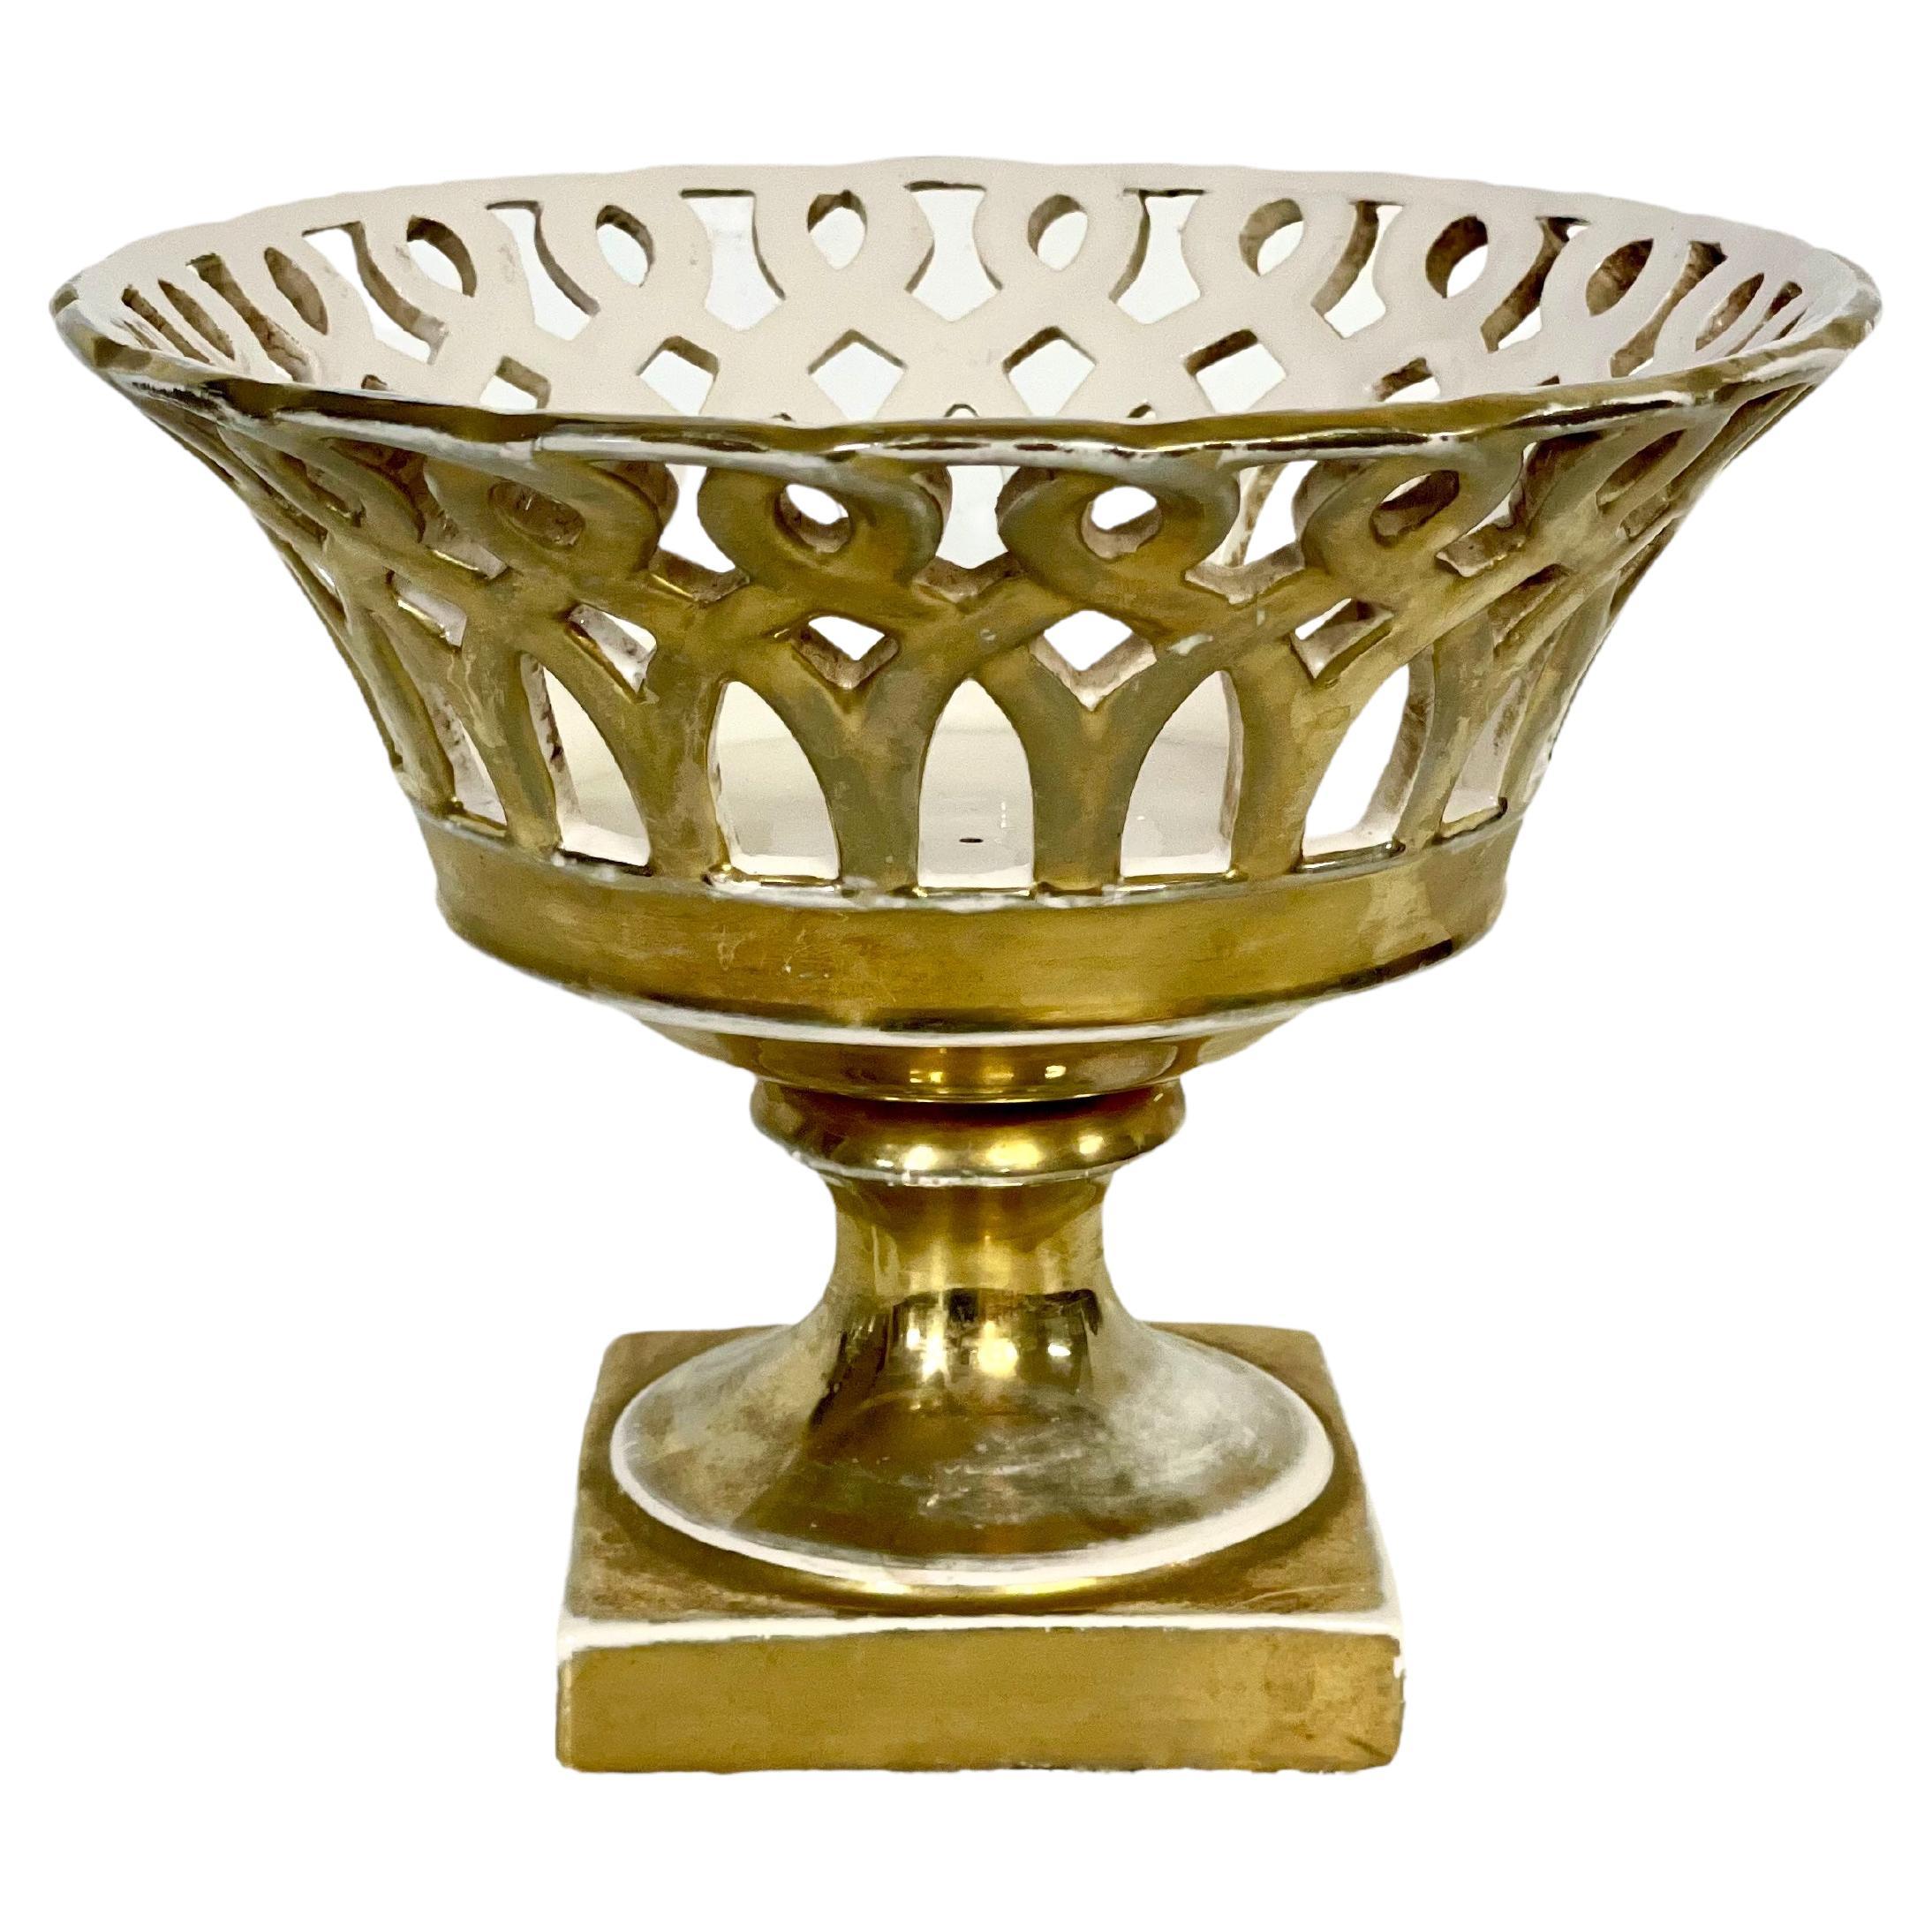 Jarrón cesta de porcelana parisina del siglo XIX